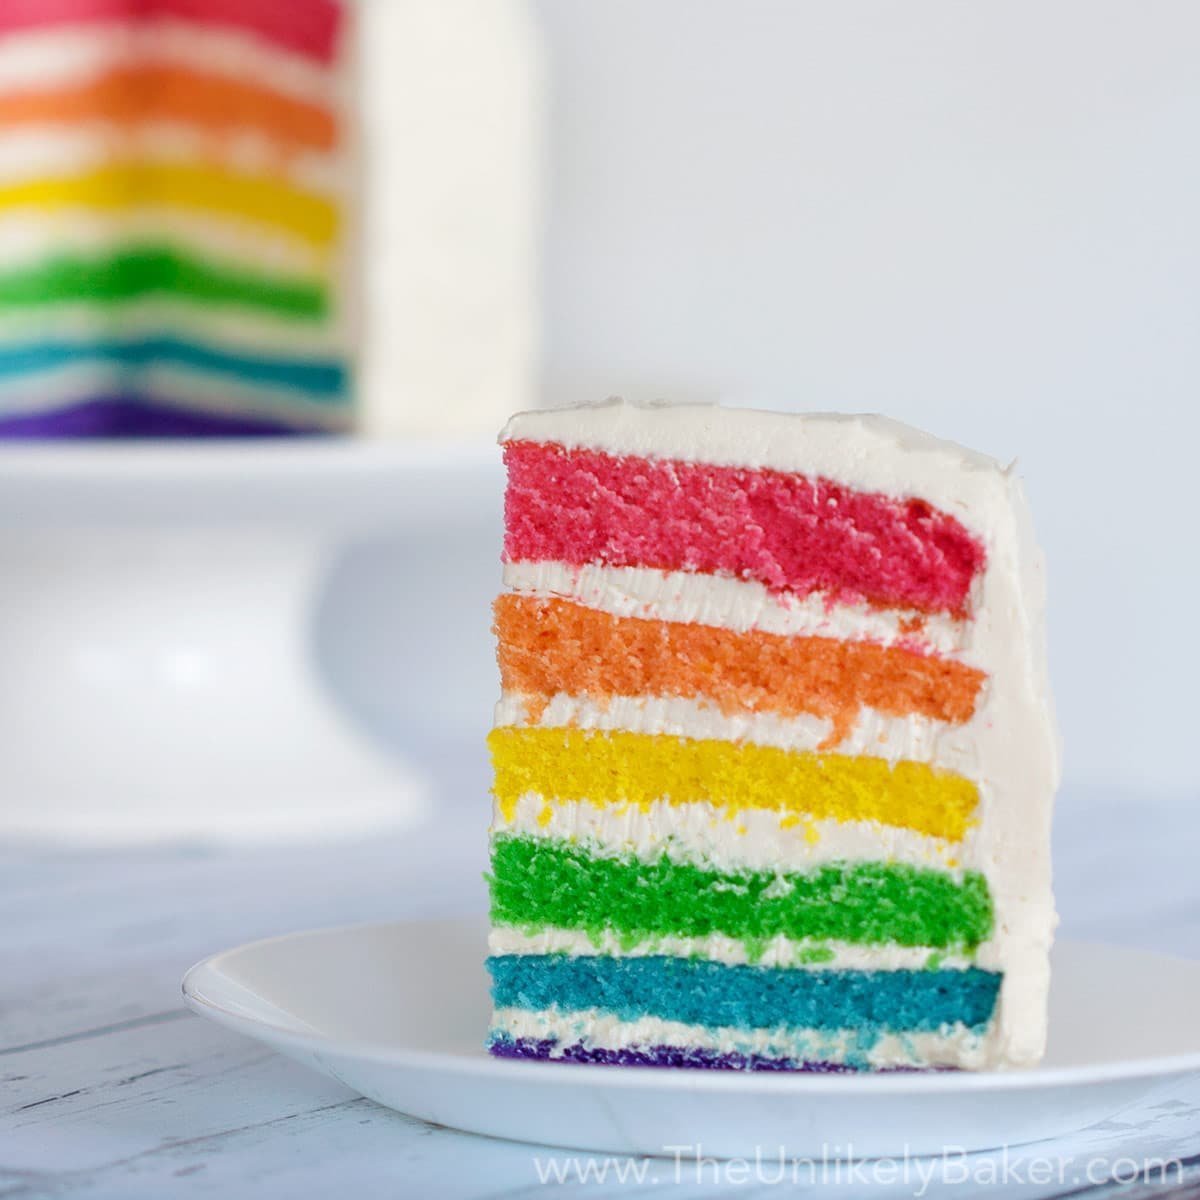 Торт с разноцветными начинками